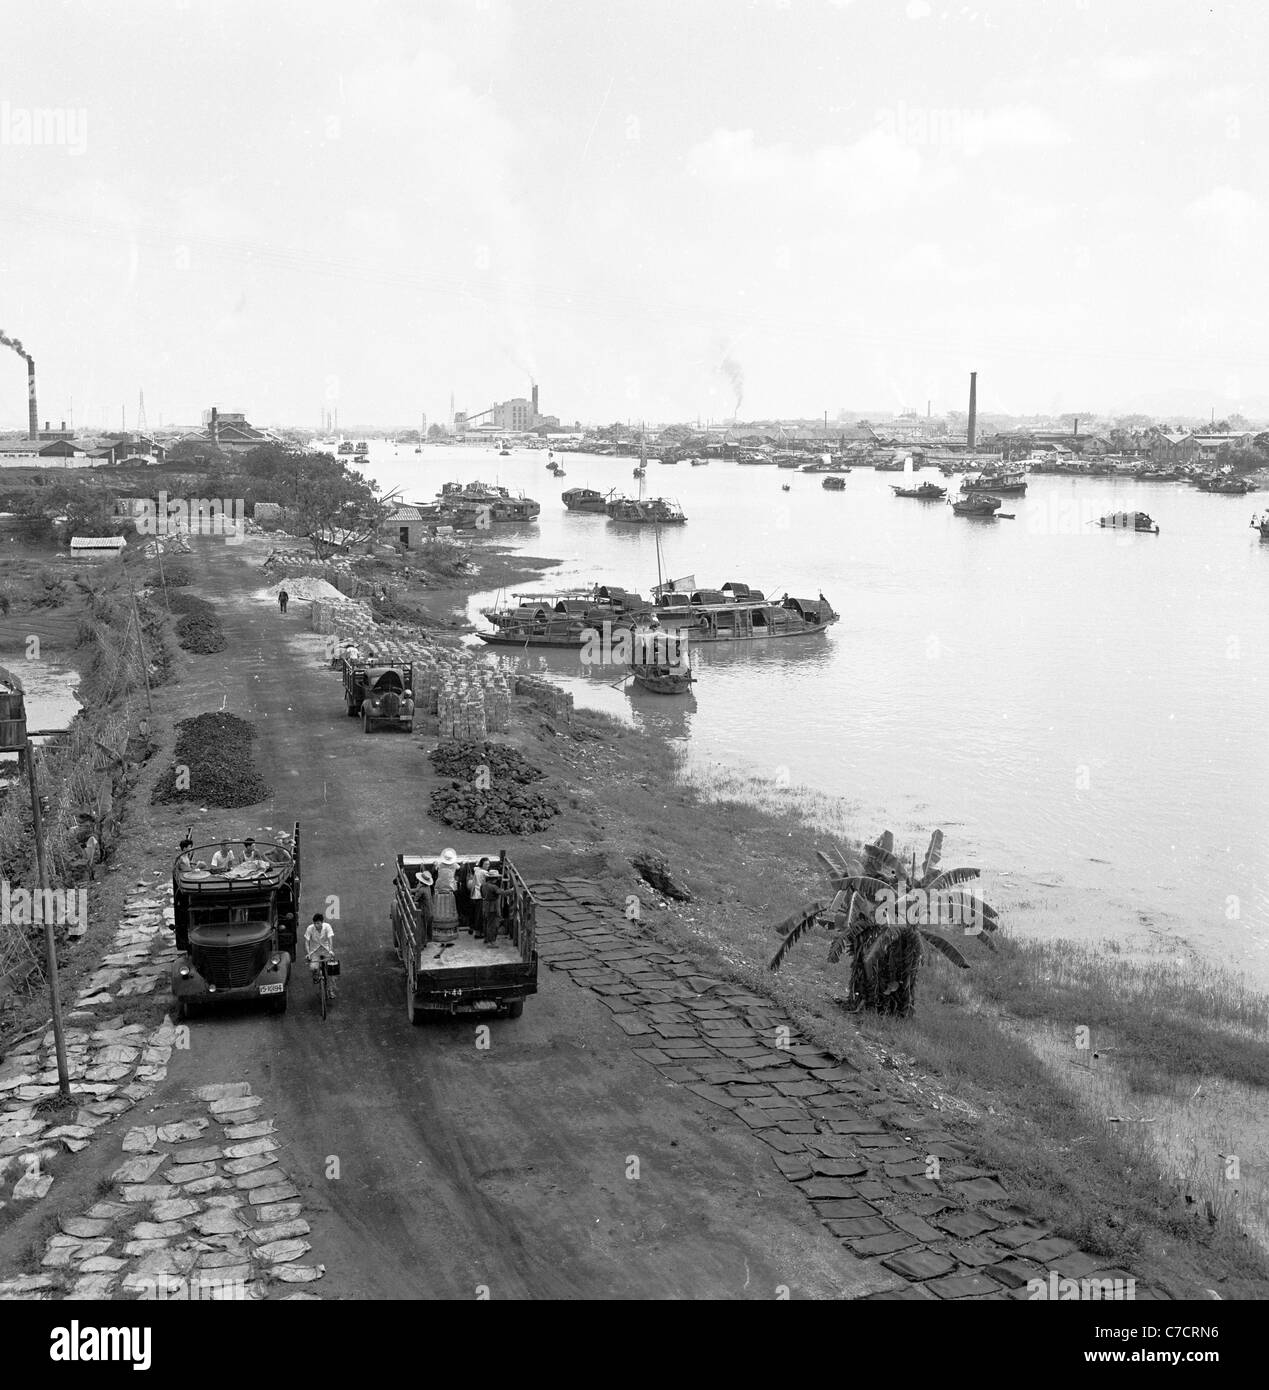 Années 1950. Tableau historique des camions le long d'une rivière, la Chine. Banque D'Images